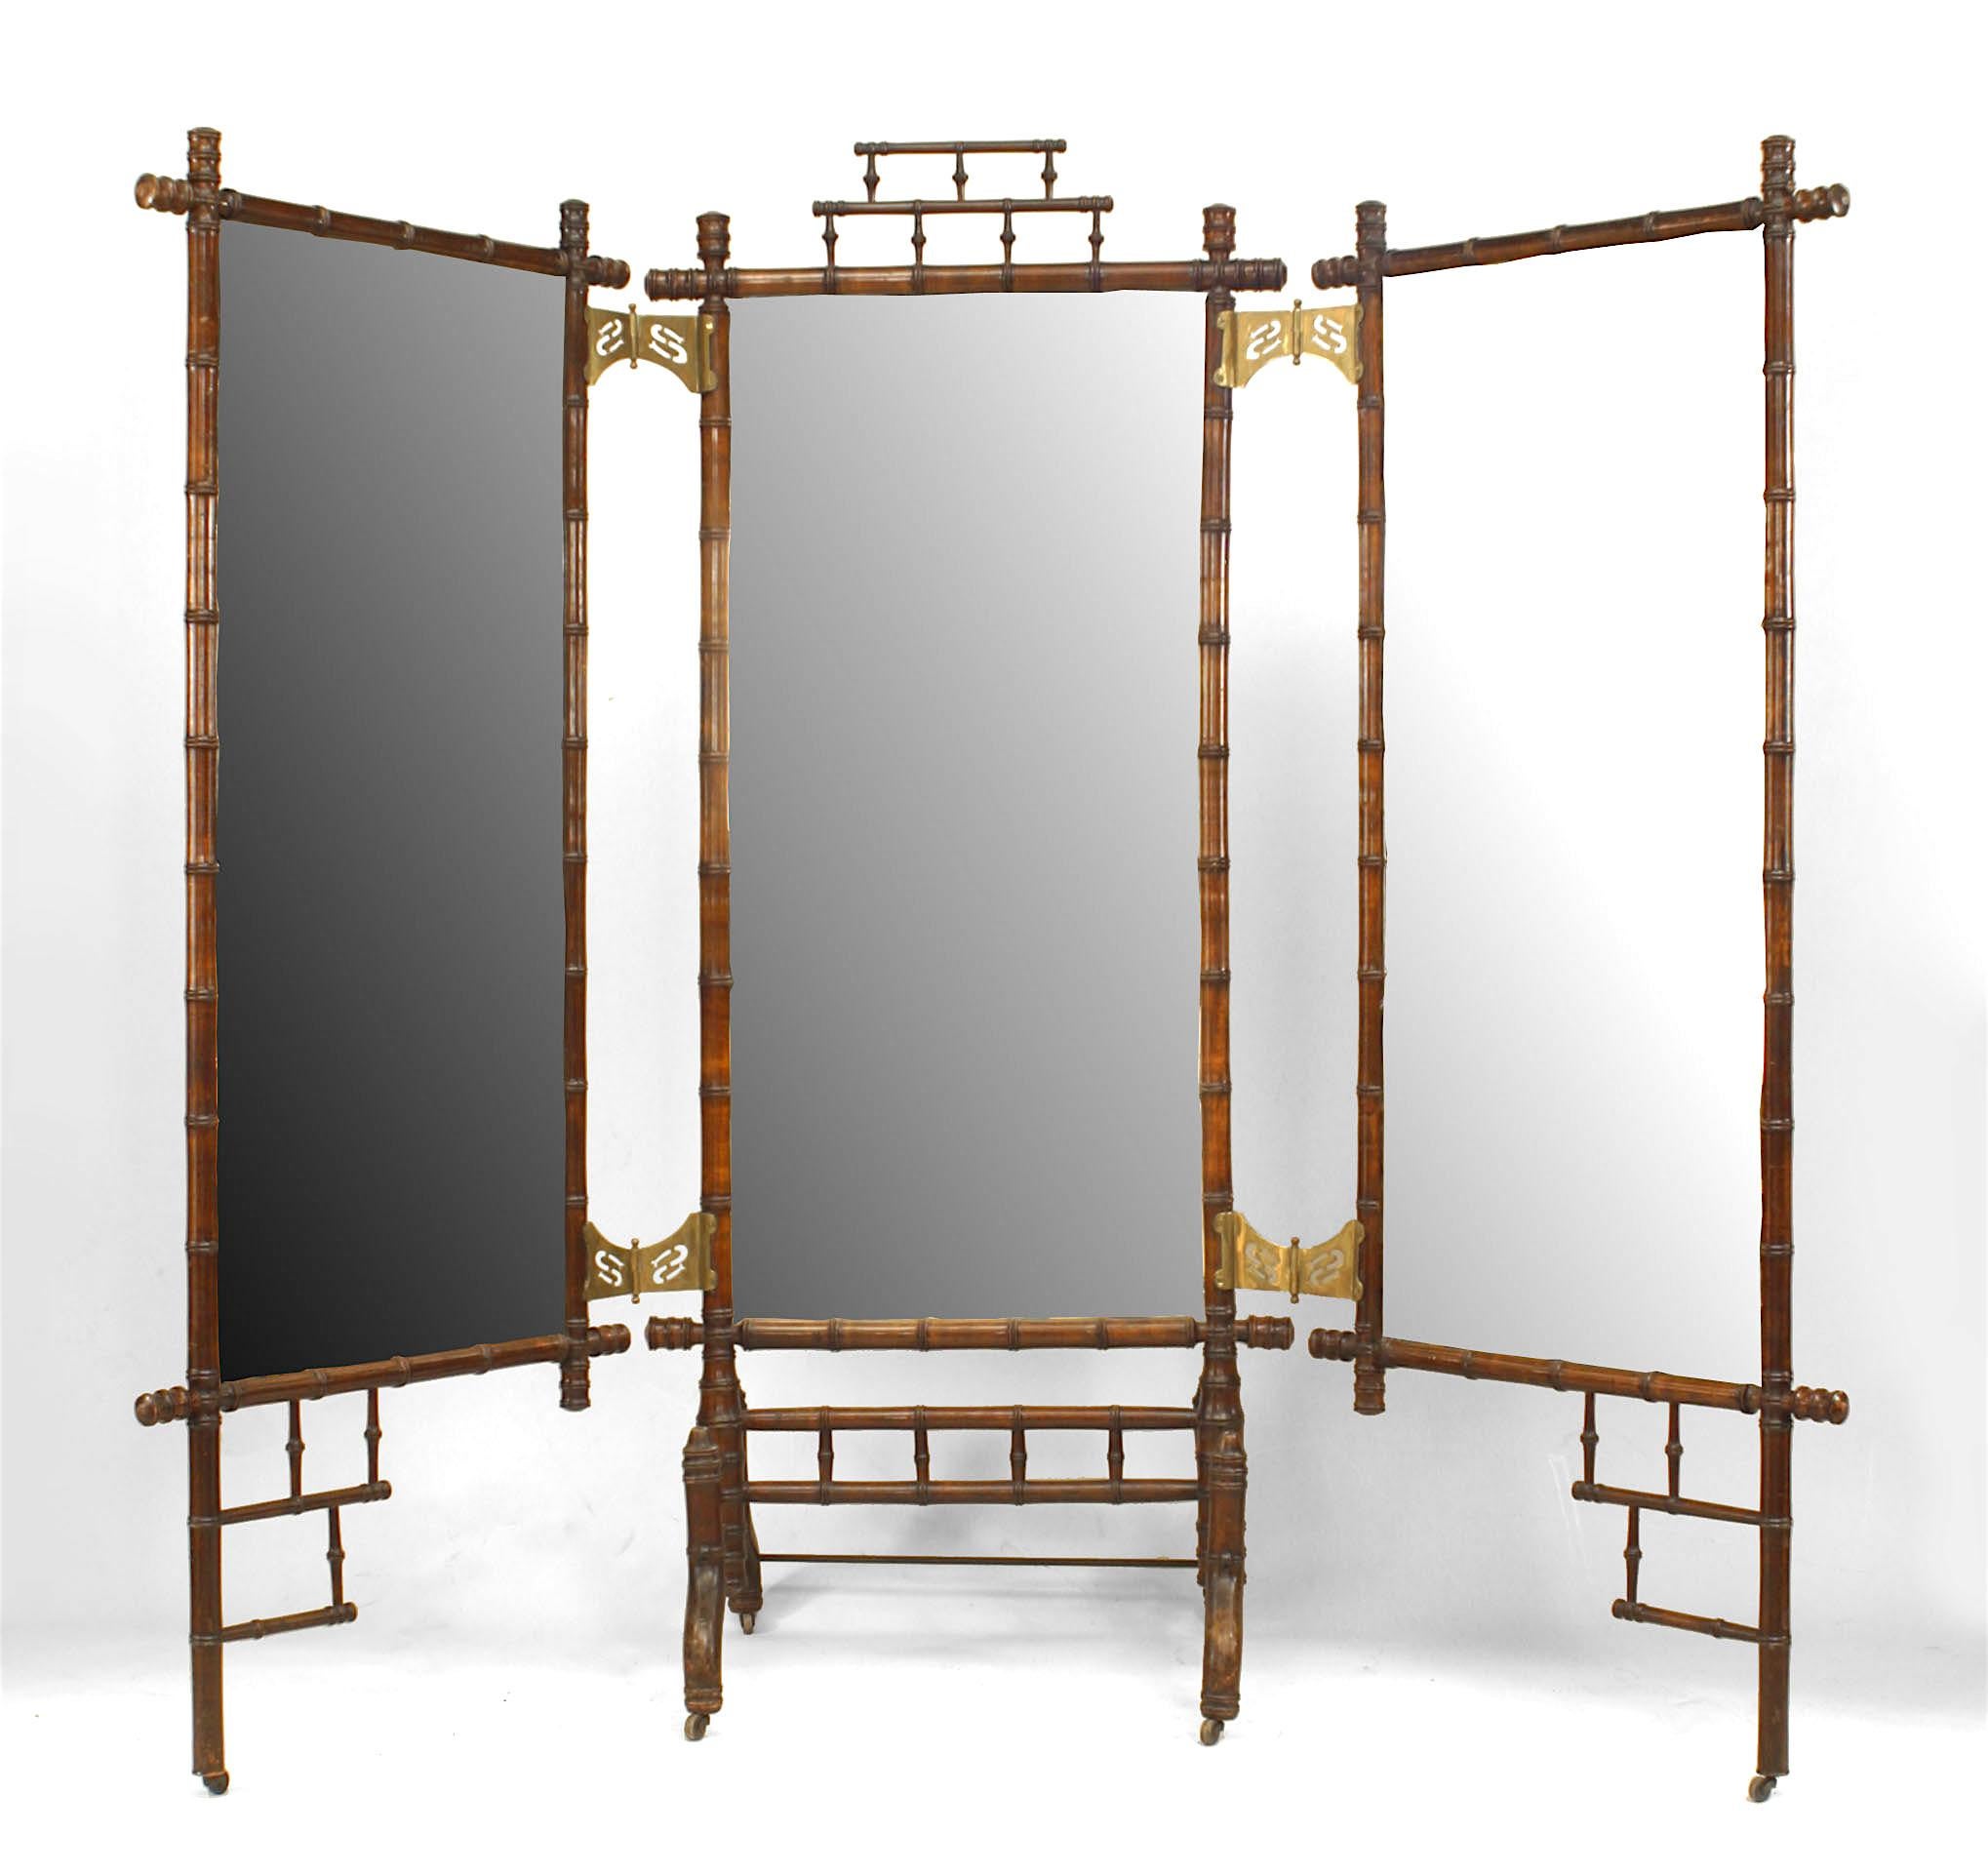 Französisch viktorianischen faux Bambus (Ahorn) dreifach (Triptychon) Cheval Spiegel mit offenen Design oben und unten mit Messing Scharniere.
